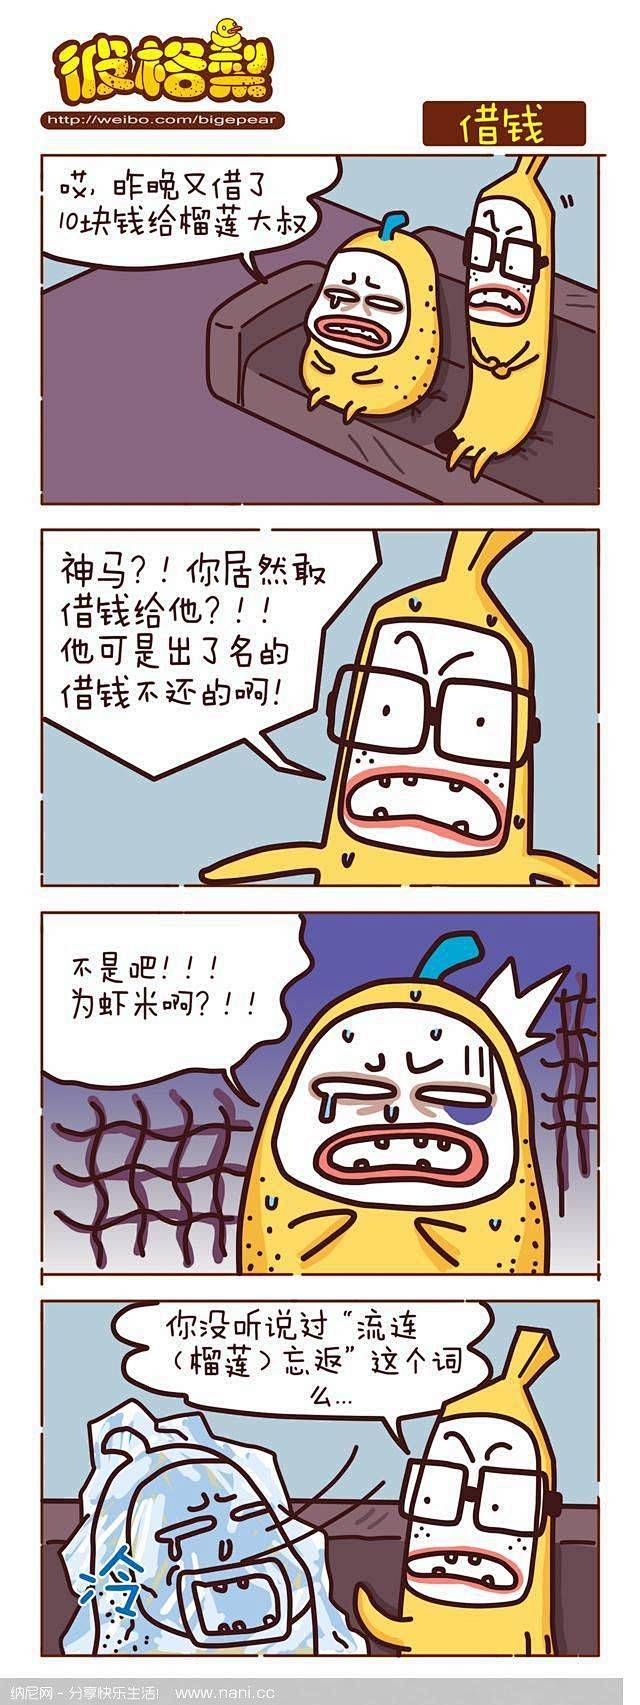 【搞笑漫画】#彼格梨#借钱-(微信号:n...